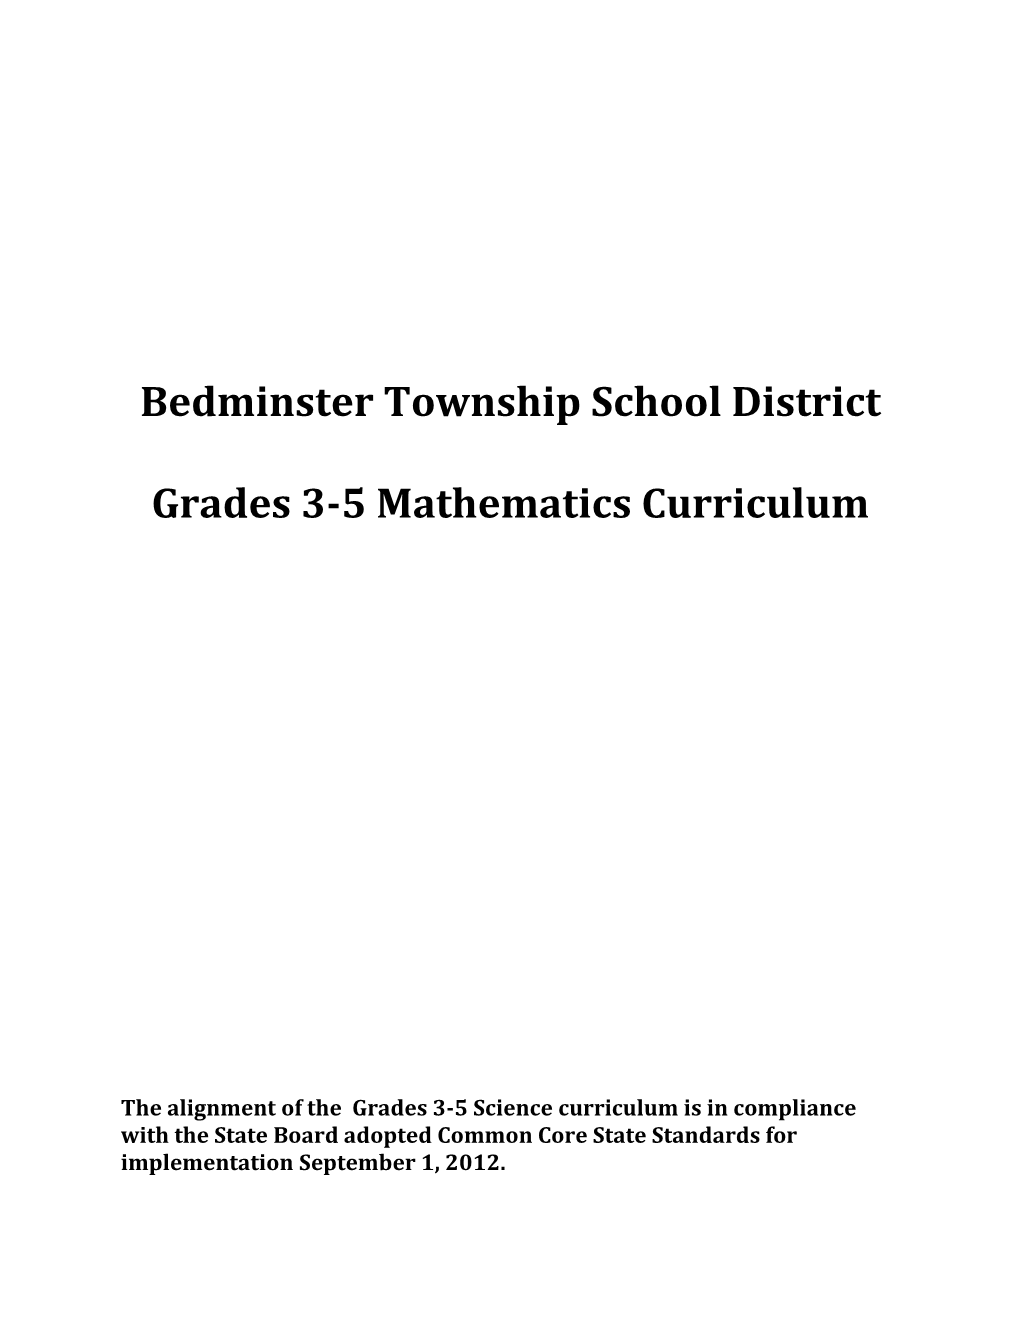 Model Curriculum Mathematics Units